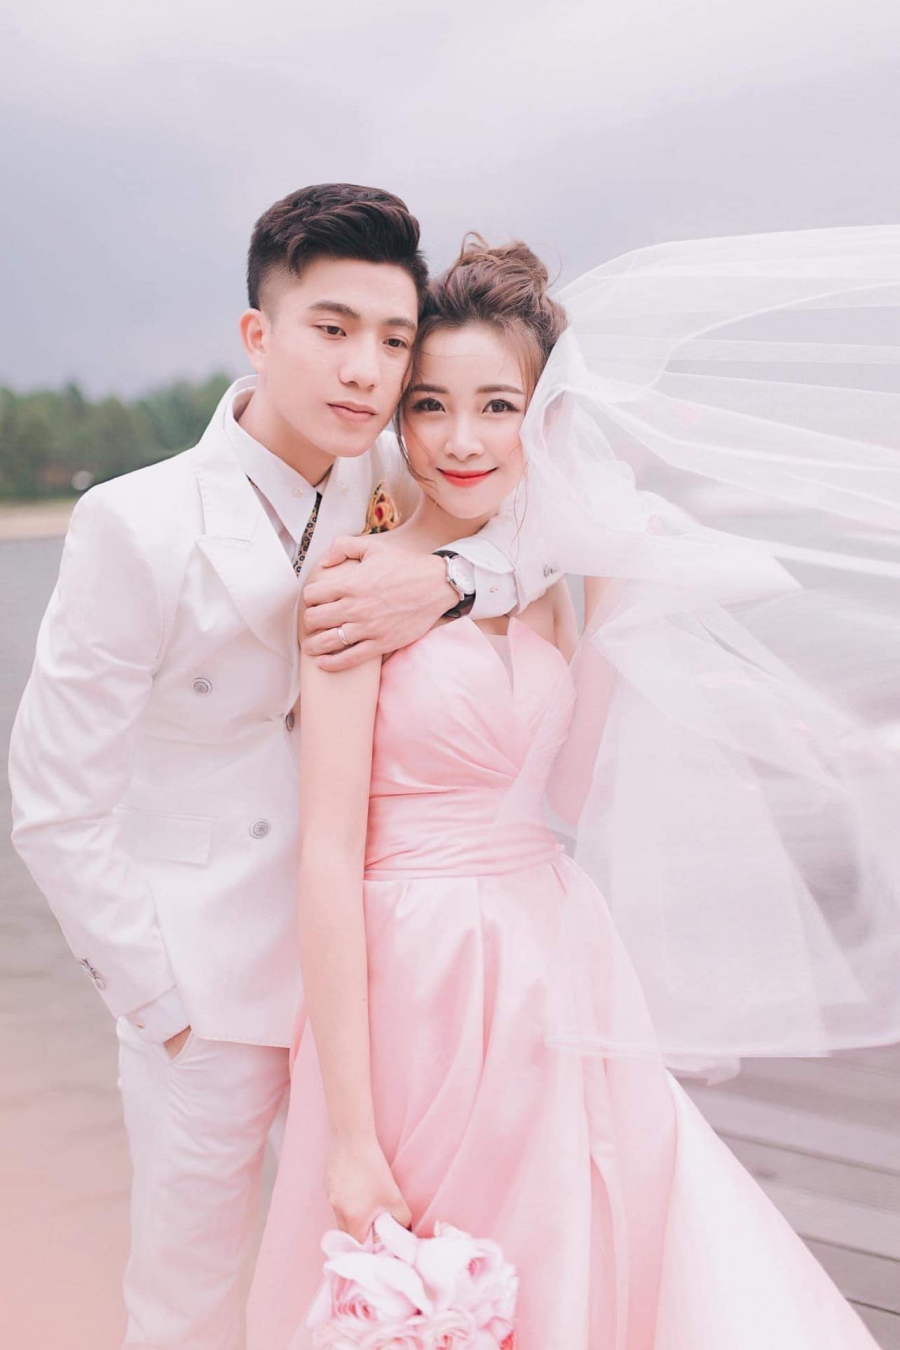 Vợ hot girl của Phan Văn Đức tròn trịa, xuề xoà sau 2 năm kết hôn sinh nở - Ảnh 1